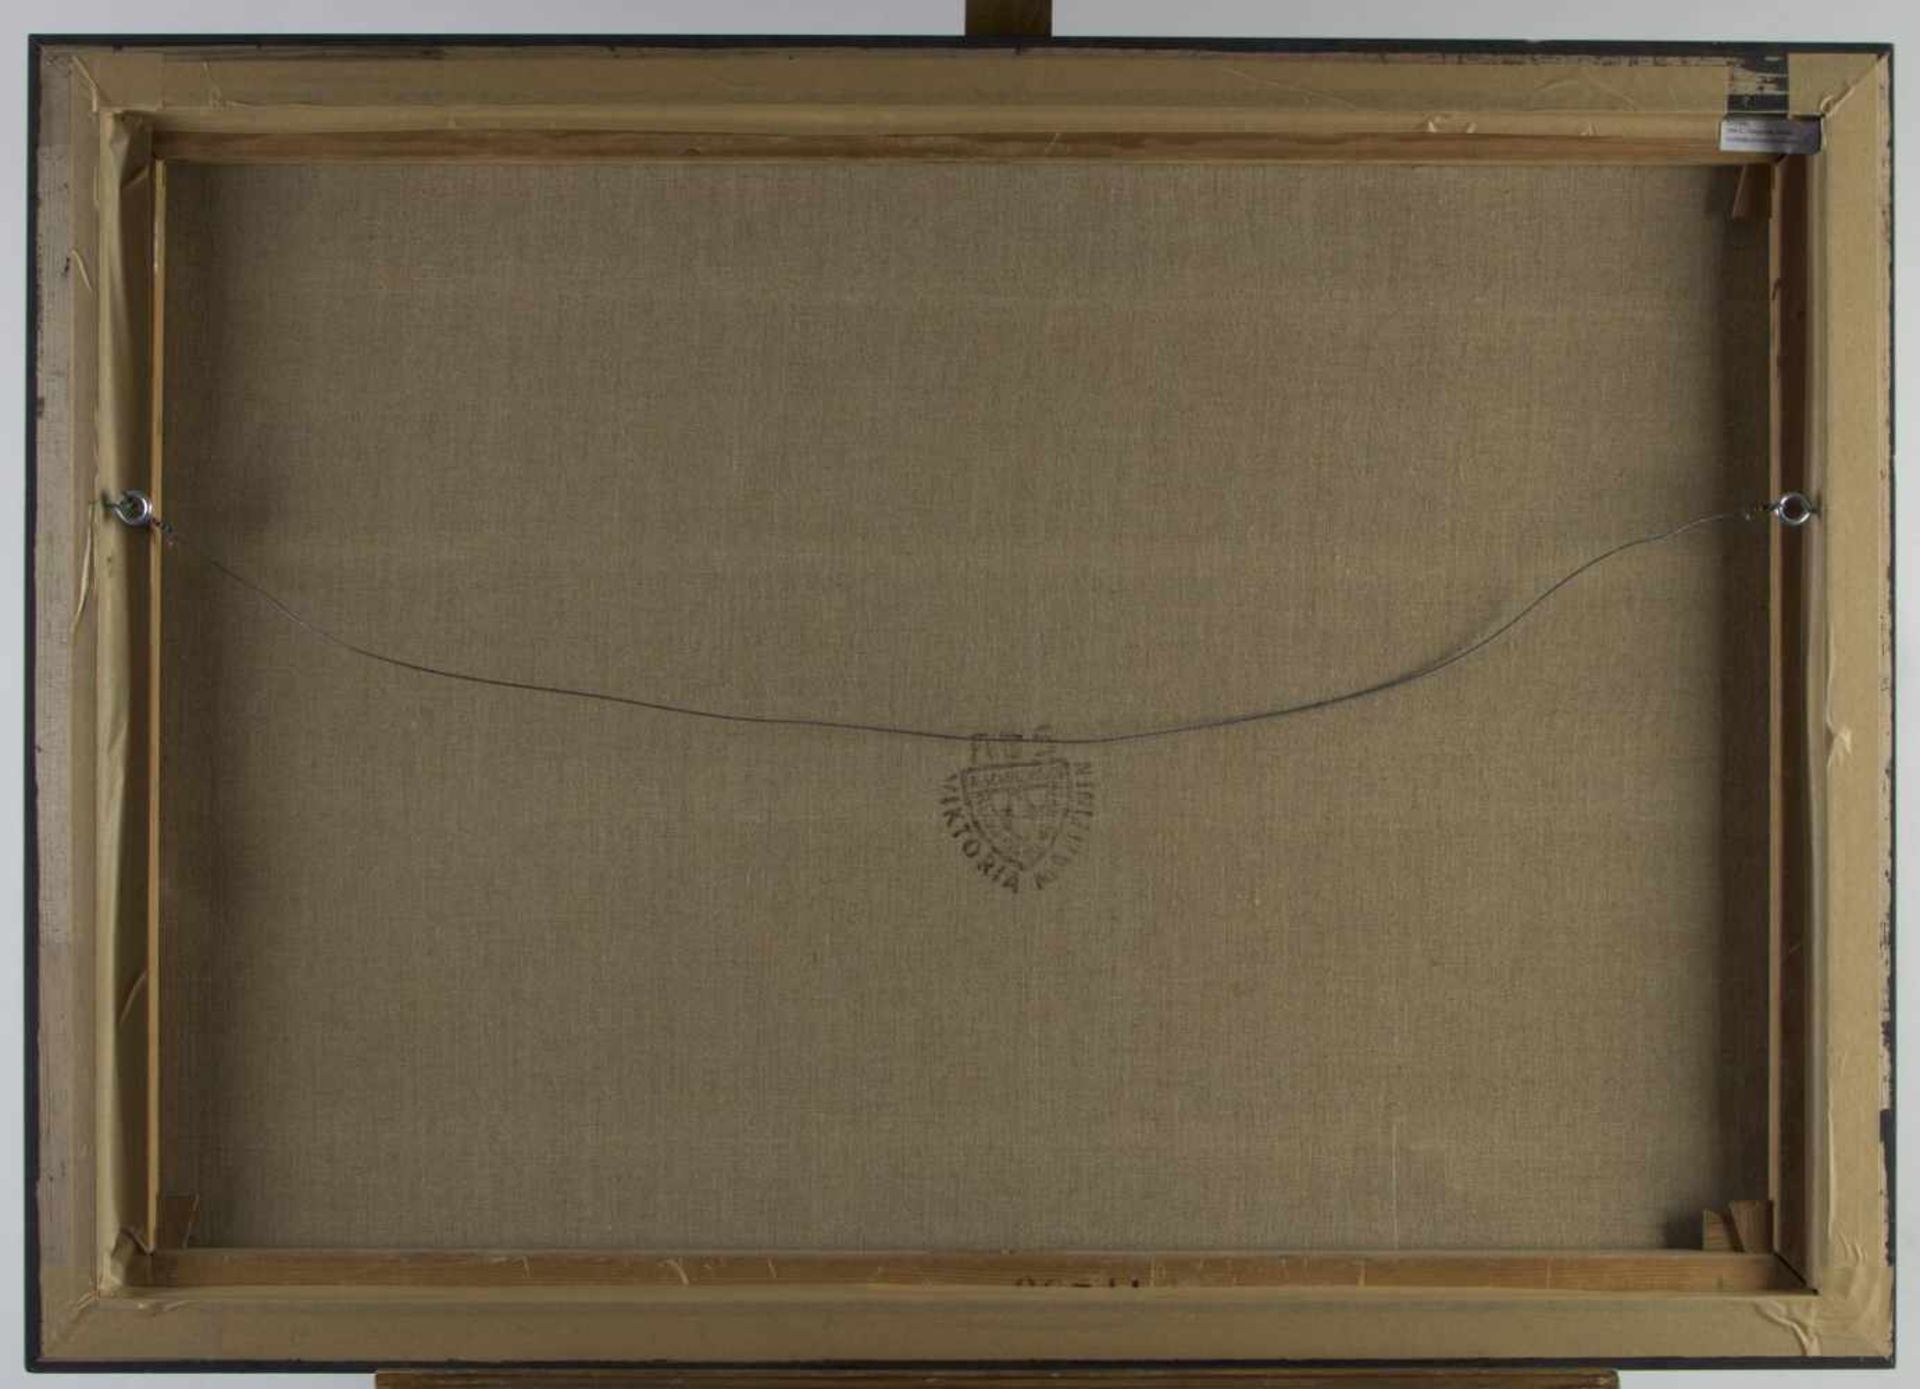 Barth, RuoniLandschaft mit einem Weiler. Öl/Lwd. Sign. und dat. (19)69. 70 x 100,5 cm. - Bild 3 aus 3